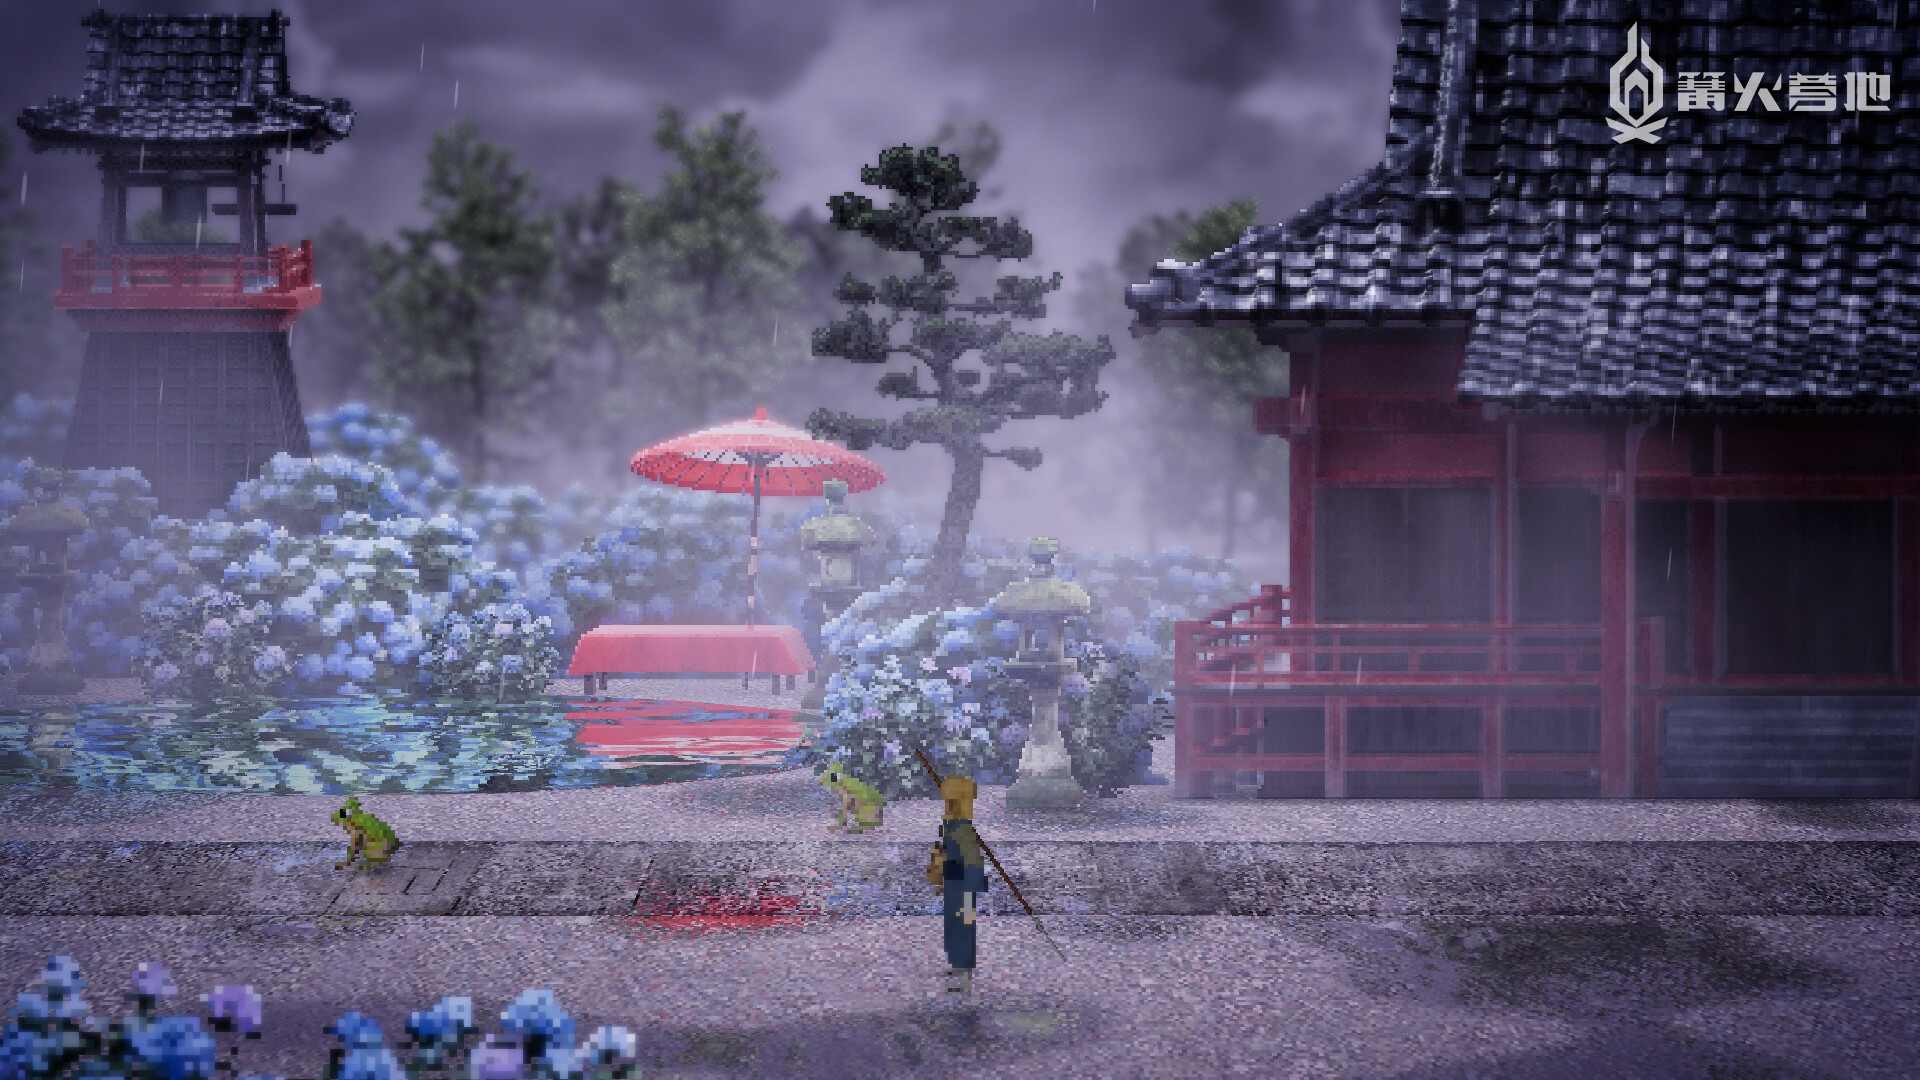 和风像素 2D 卷轴动作冒险游戏《雨魂》公布主视觉图